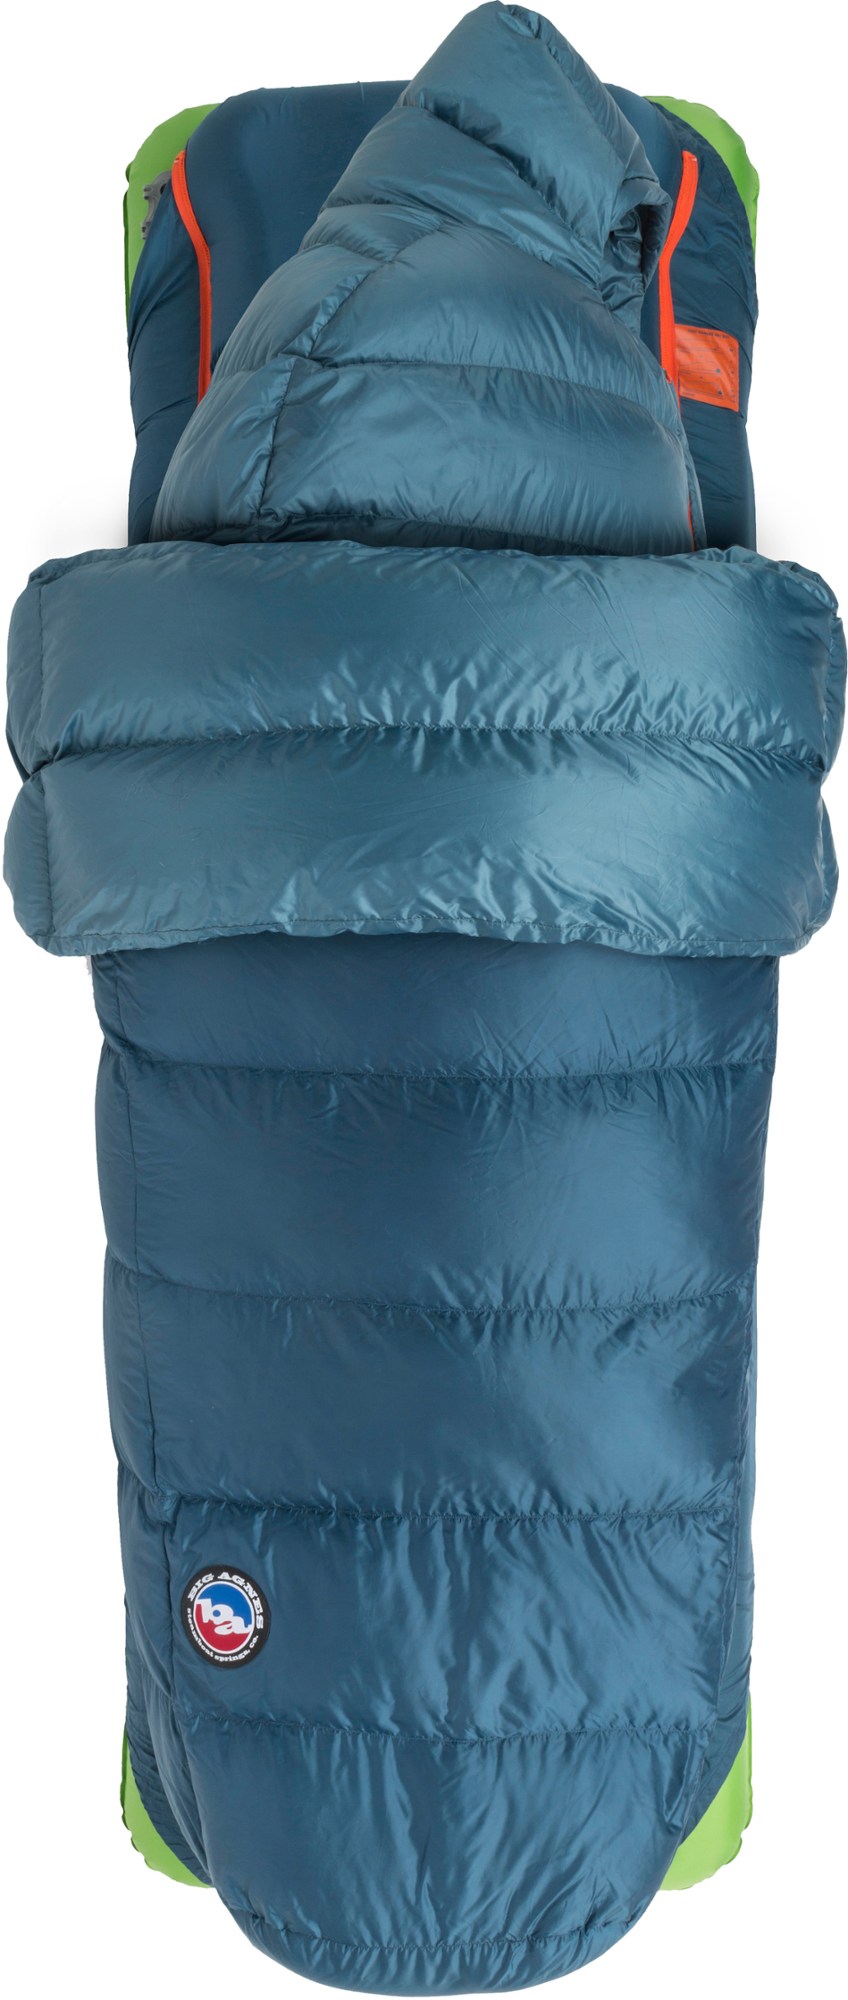 спальный коврик хинман big agnes синий Спальный мешок Lost Ranger 3N1 15 - мужской Big Agnes, синий